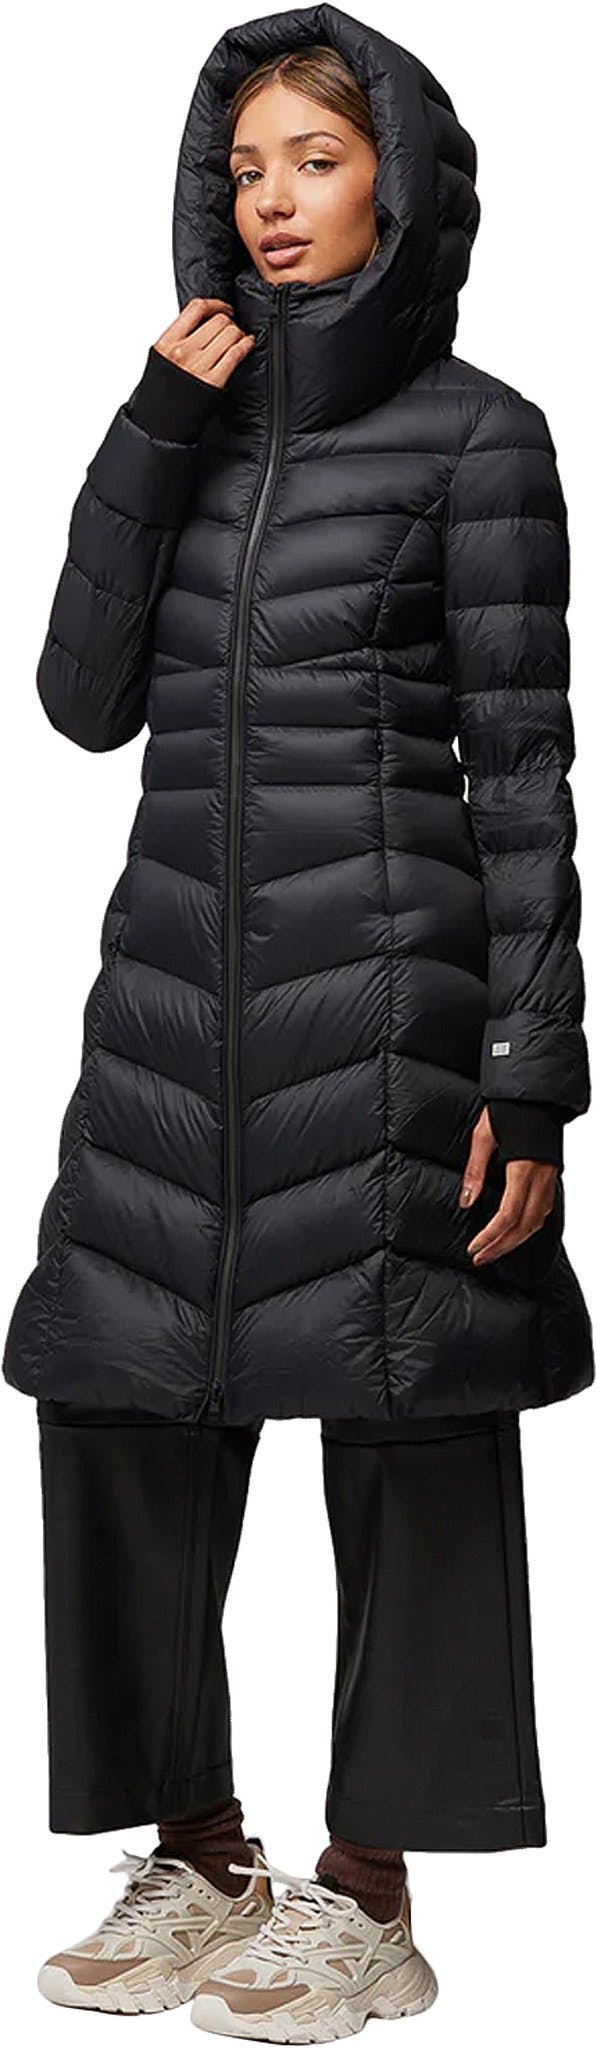 Image de produit pour Manteau ajusté et évasé en duvet léger durable avec capuchon Lita-TD - Femme